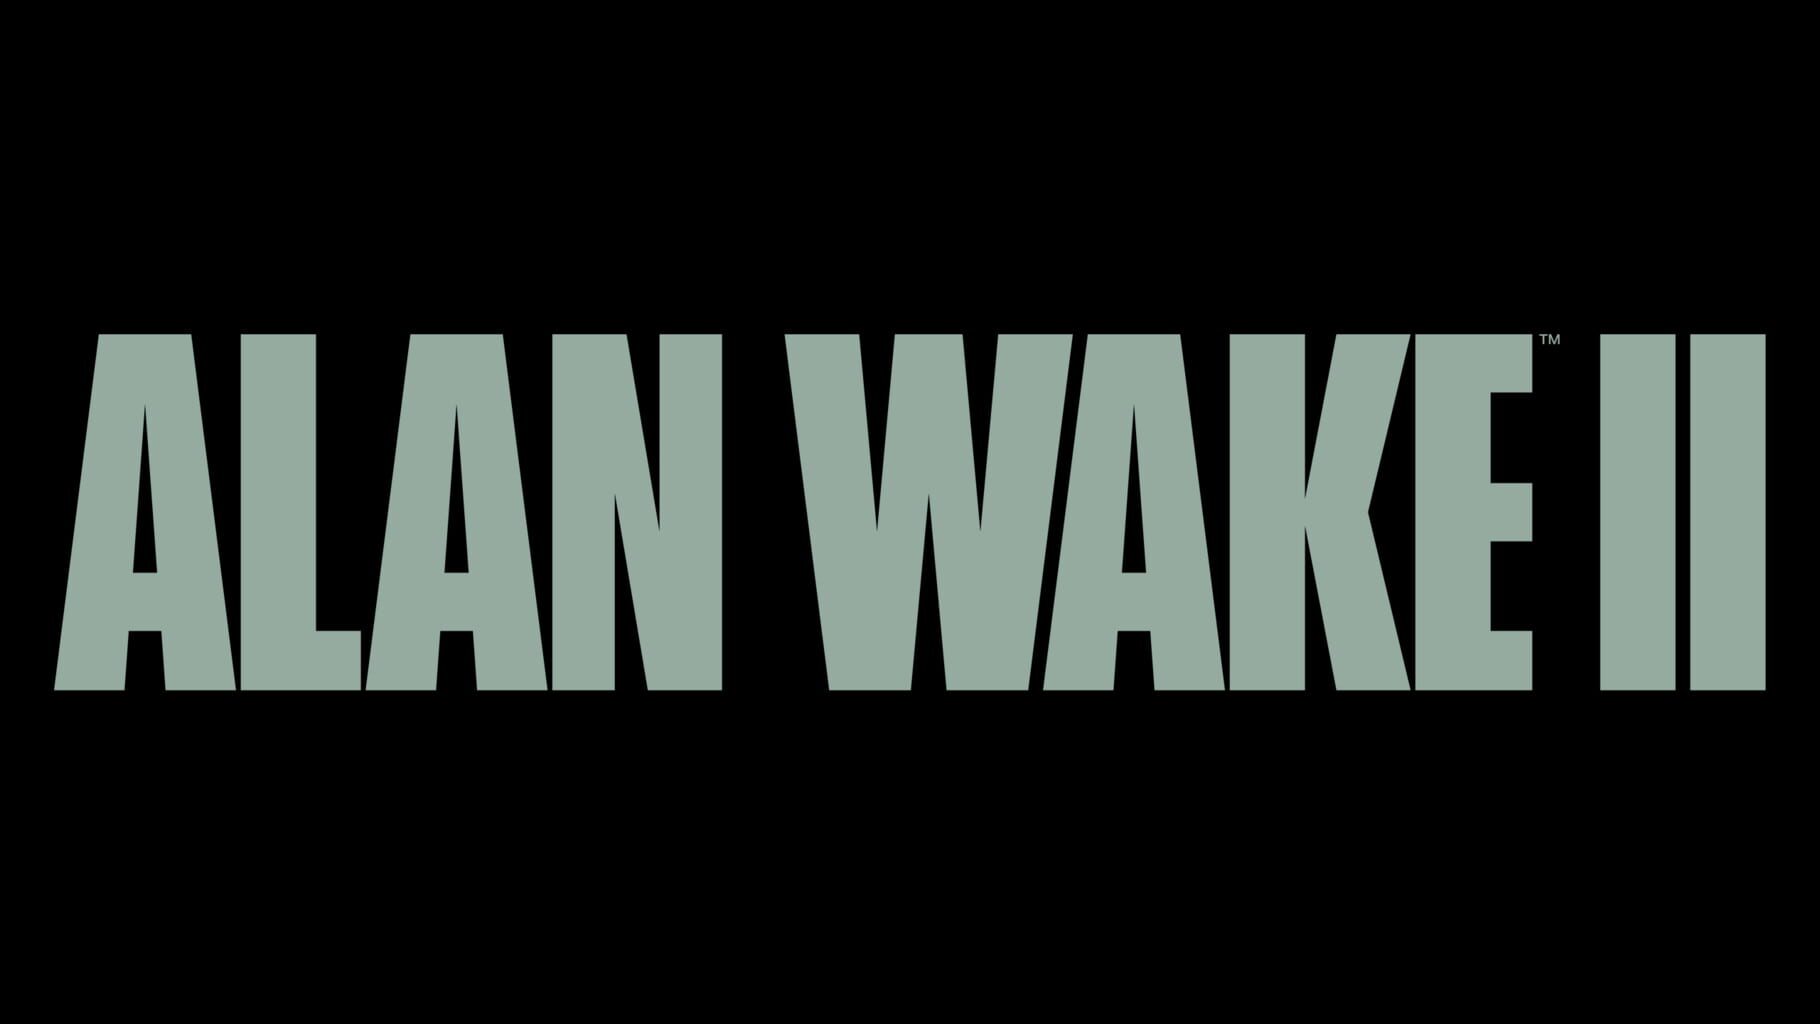 Arte - Alan Wake II